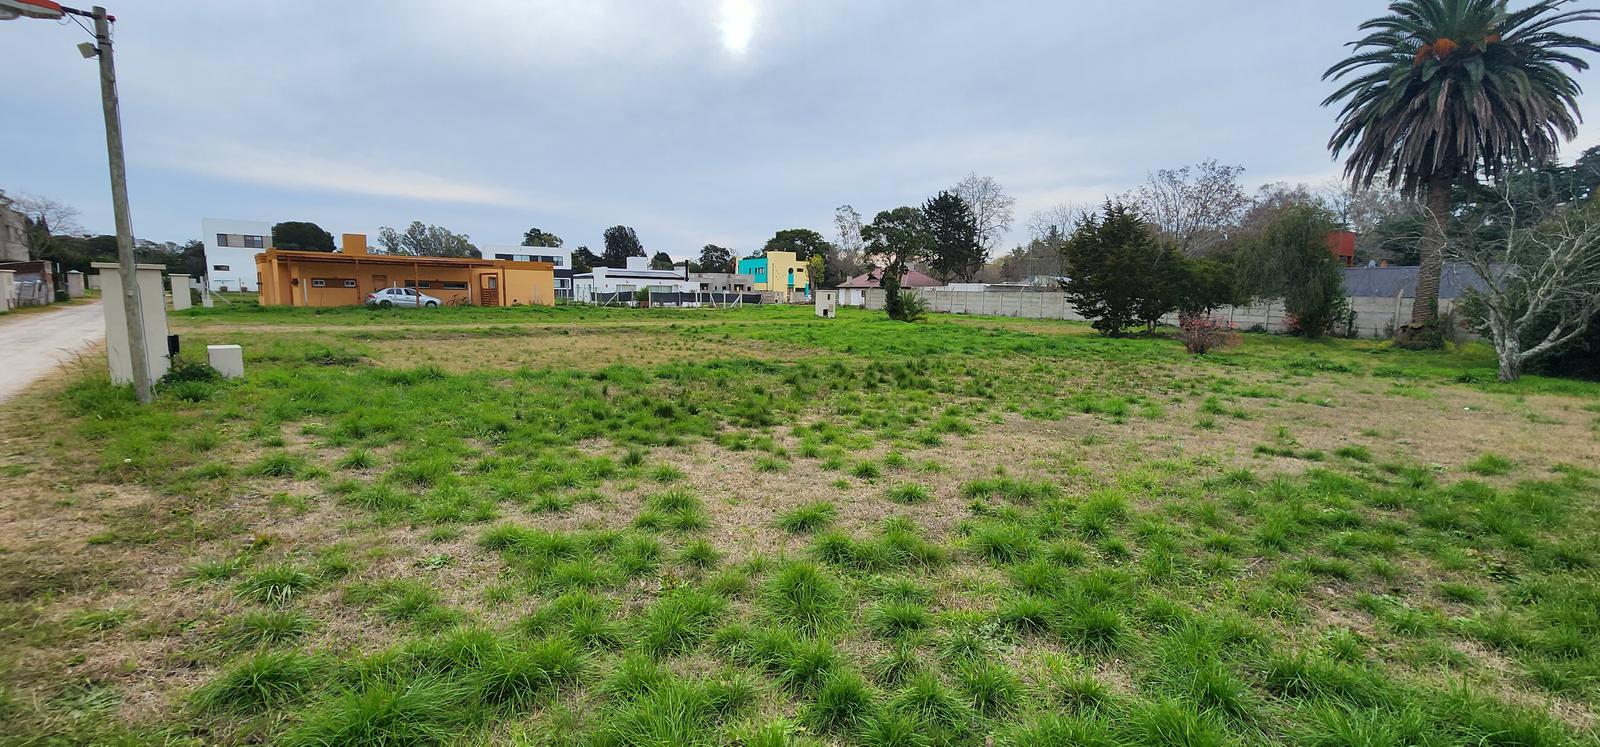 Venta terrenos (lotes) de 432 m2  barrio cerrado en Villa Elisa